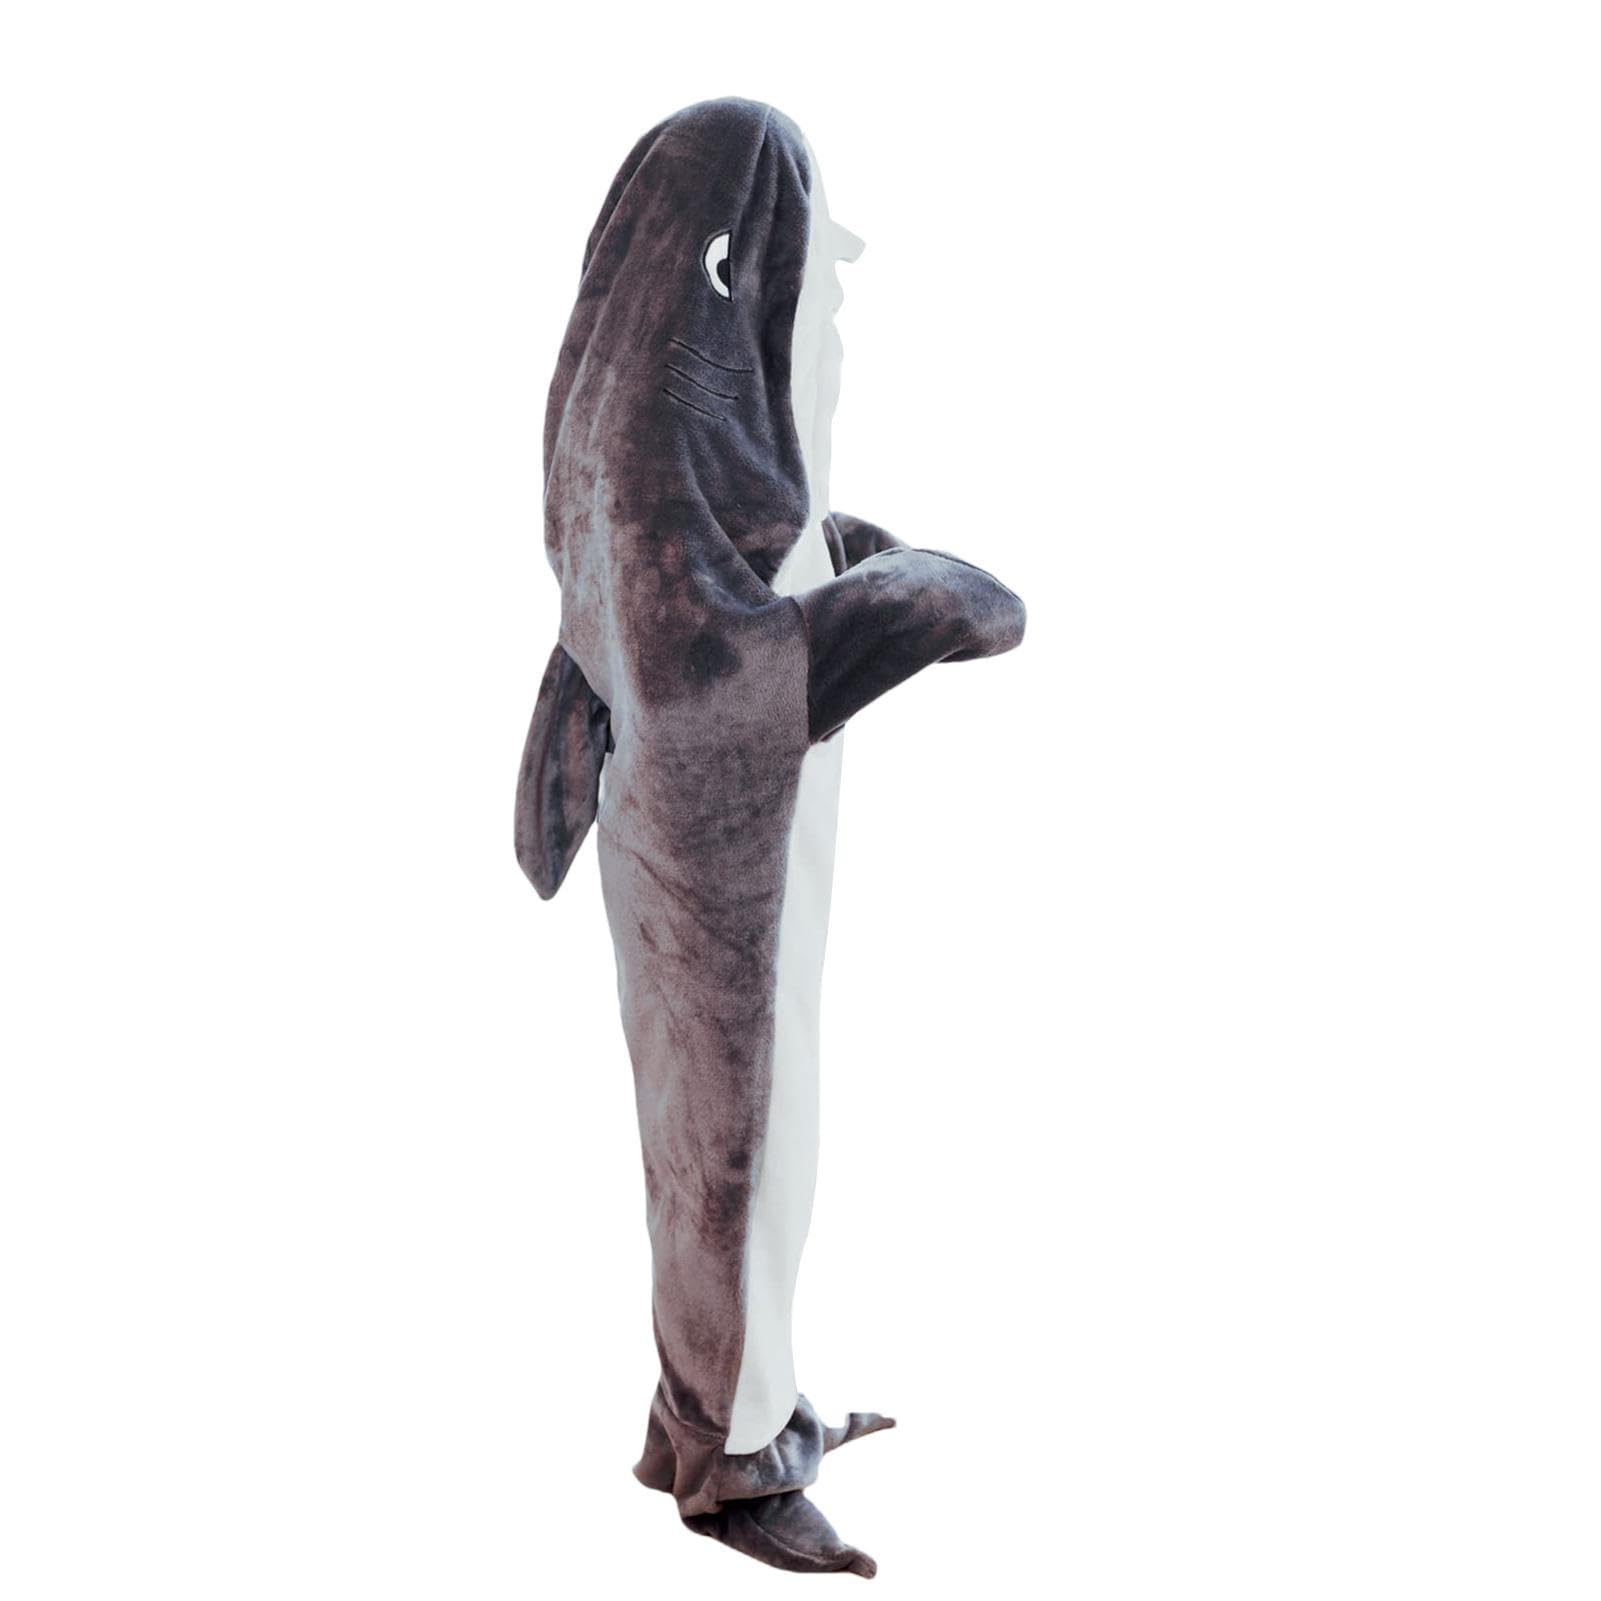 Hai Decke Erwachsene | Shark Blanket | Shark Onesie Blanket| Soft Cozy Shark Sleeping Bag | Für Jungen, Mädchen, Frauen, Männer, Movie Night Shark Cosplay Geschenke